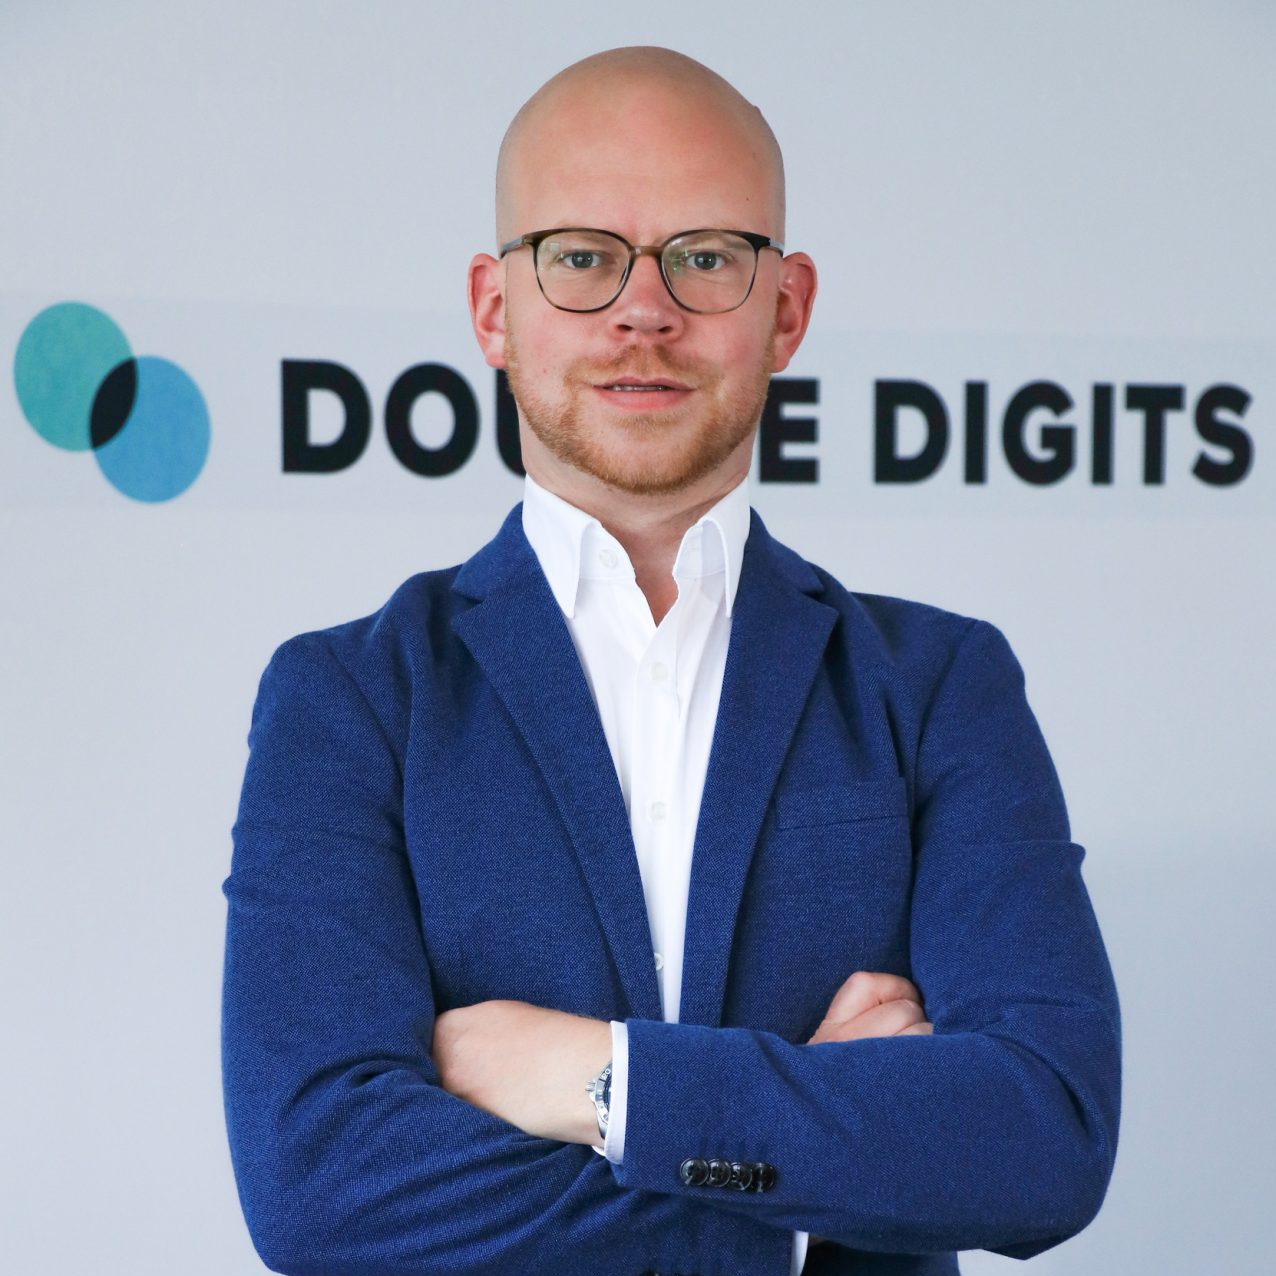 Von der Idee zum Erfolg: Wie der Gründer der Digitalagentur Double Digits GmbH sein Geschäft aufgebaut hat